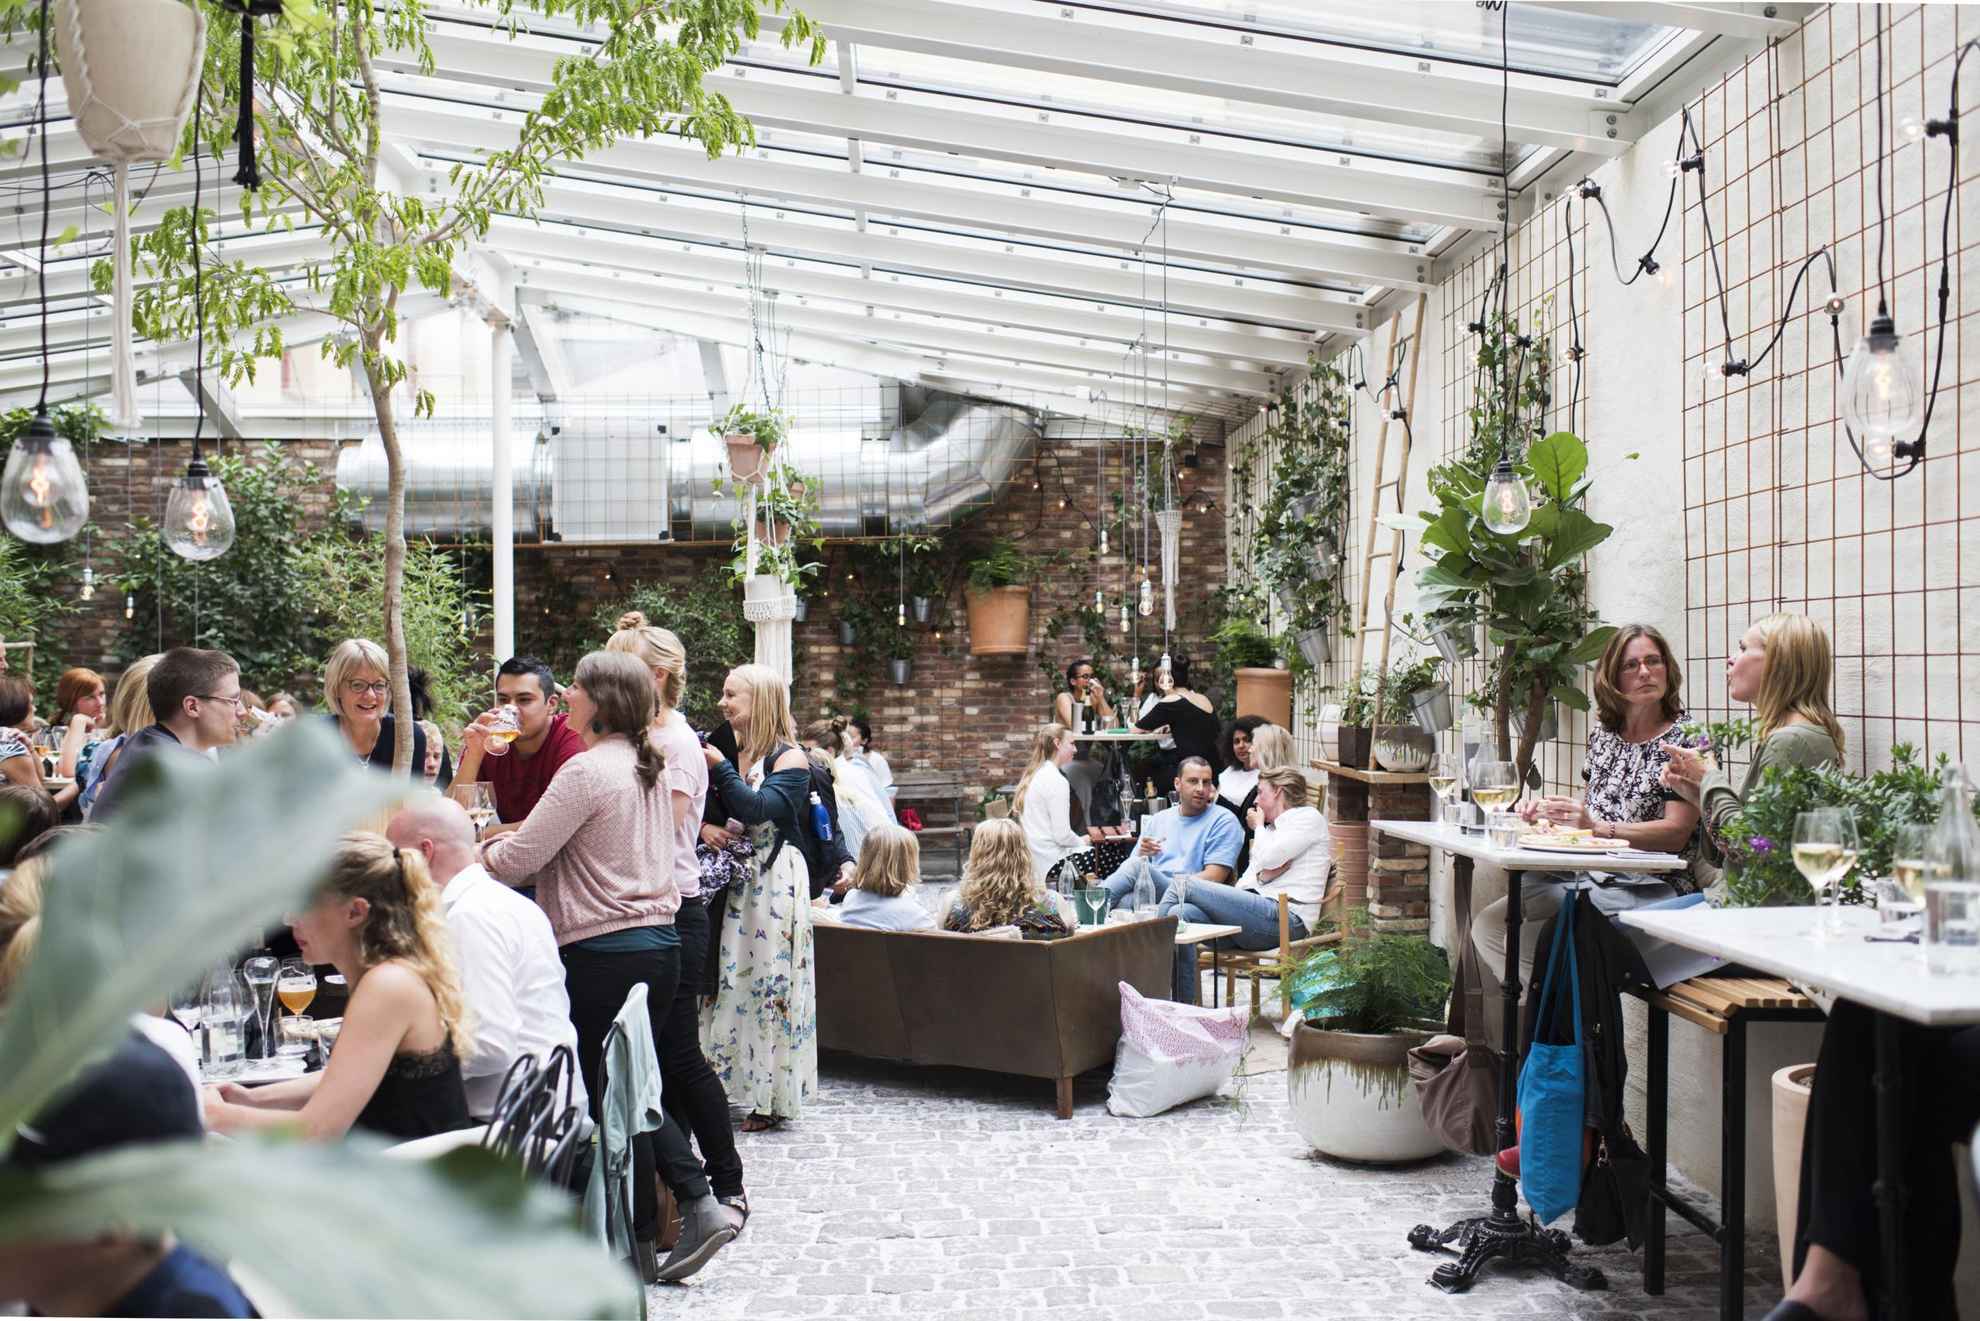 Des gens apprécient les boissons et la nourriture dans le café Magasinet de Göteborg. Le sol du café est en pierre, les murs en briques, le plafond de verre et l’intérieur est rempli de plantes vertes.